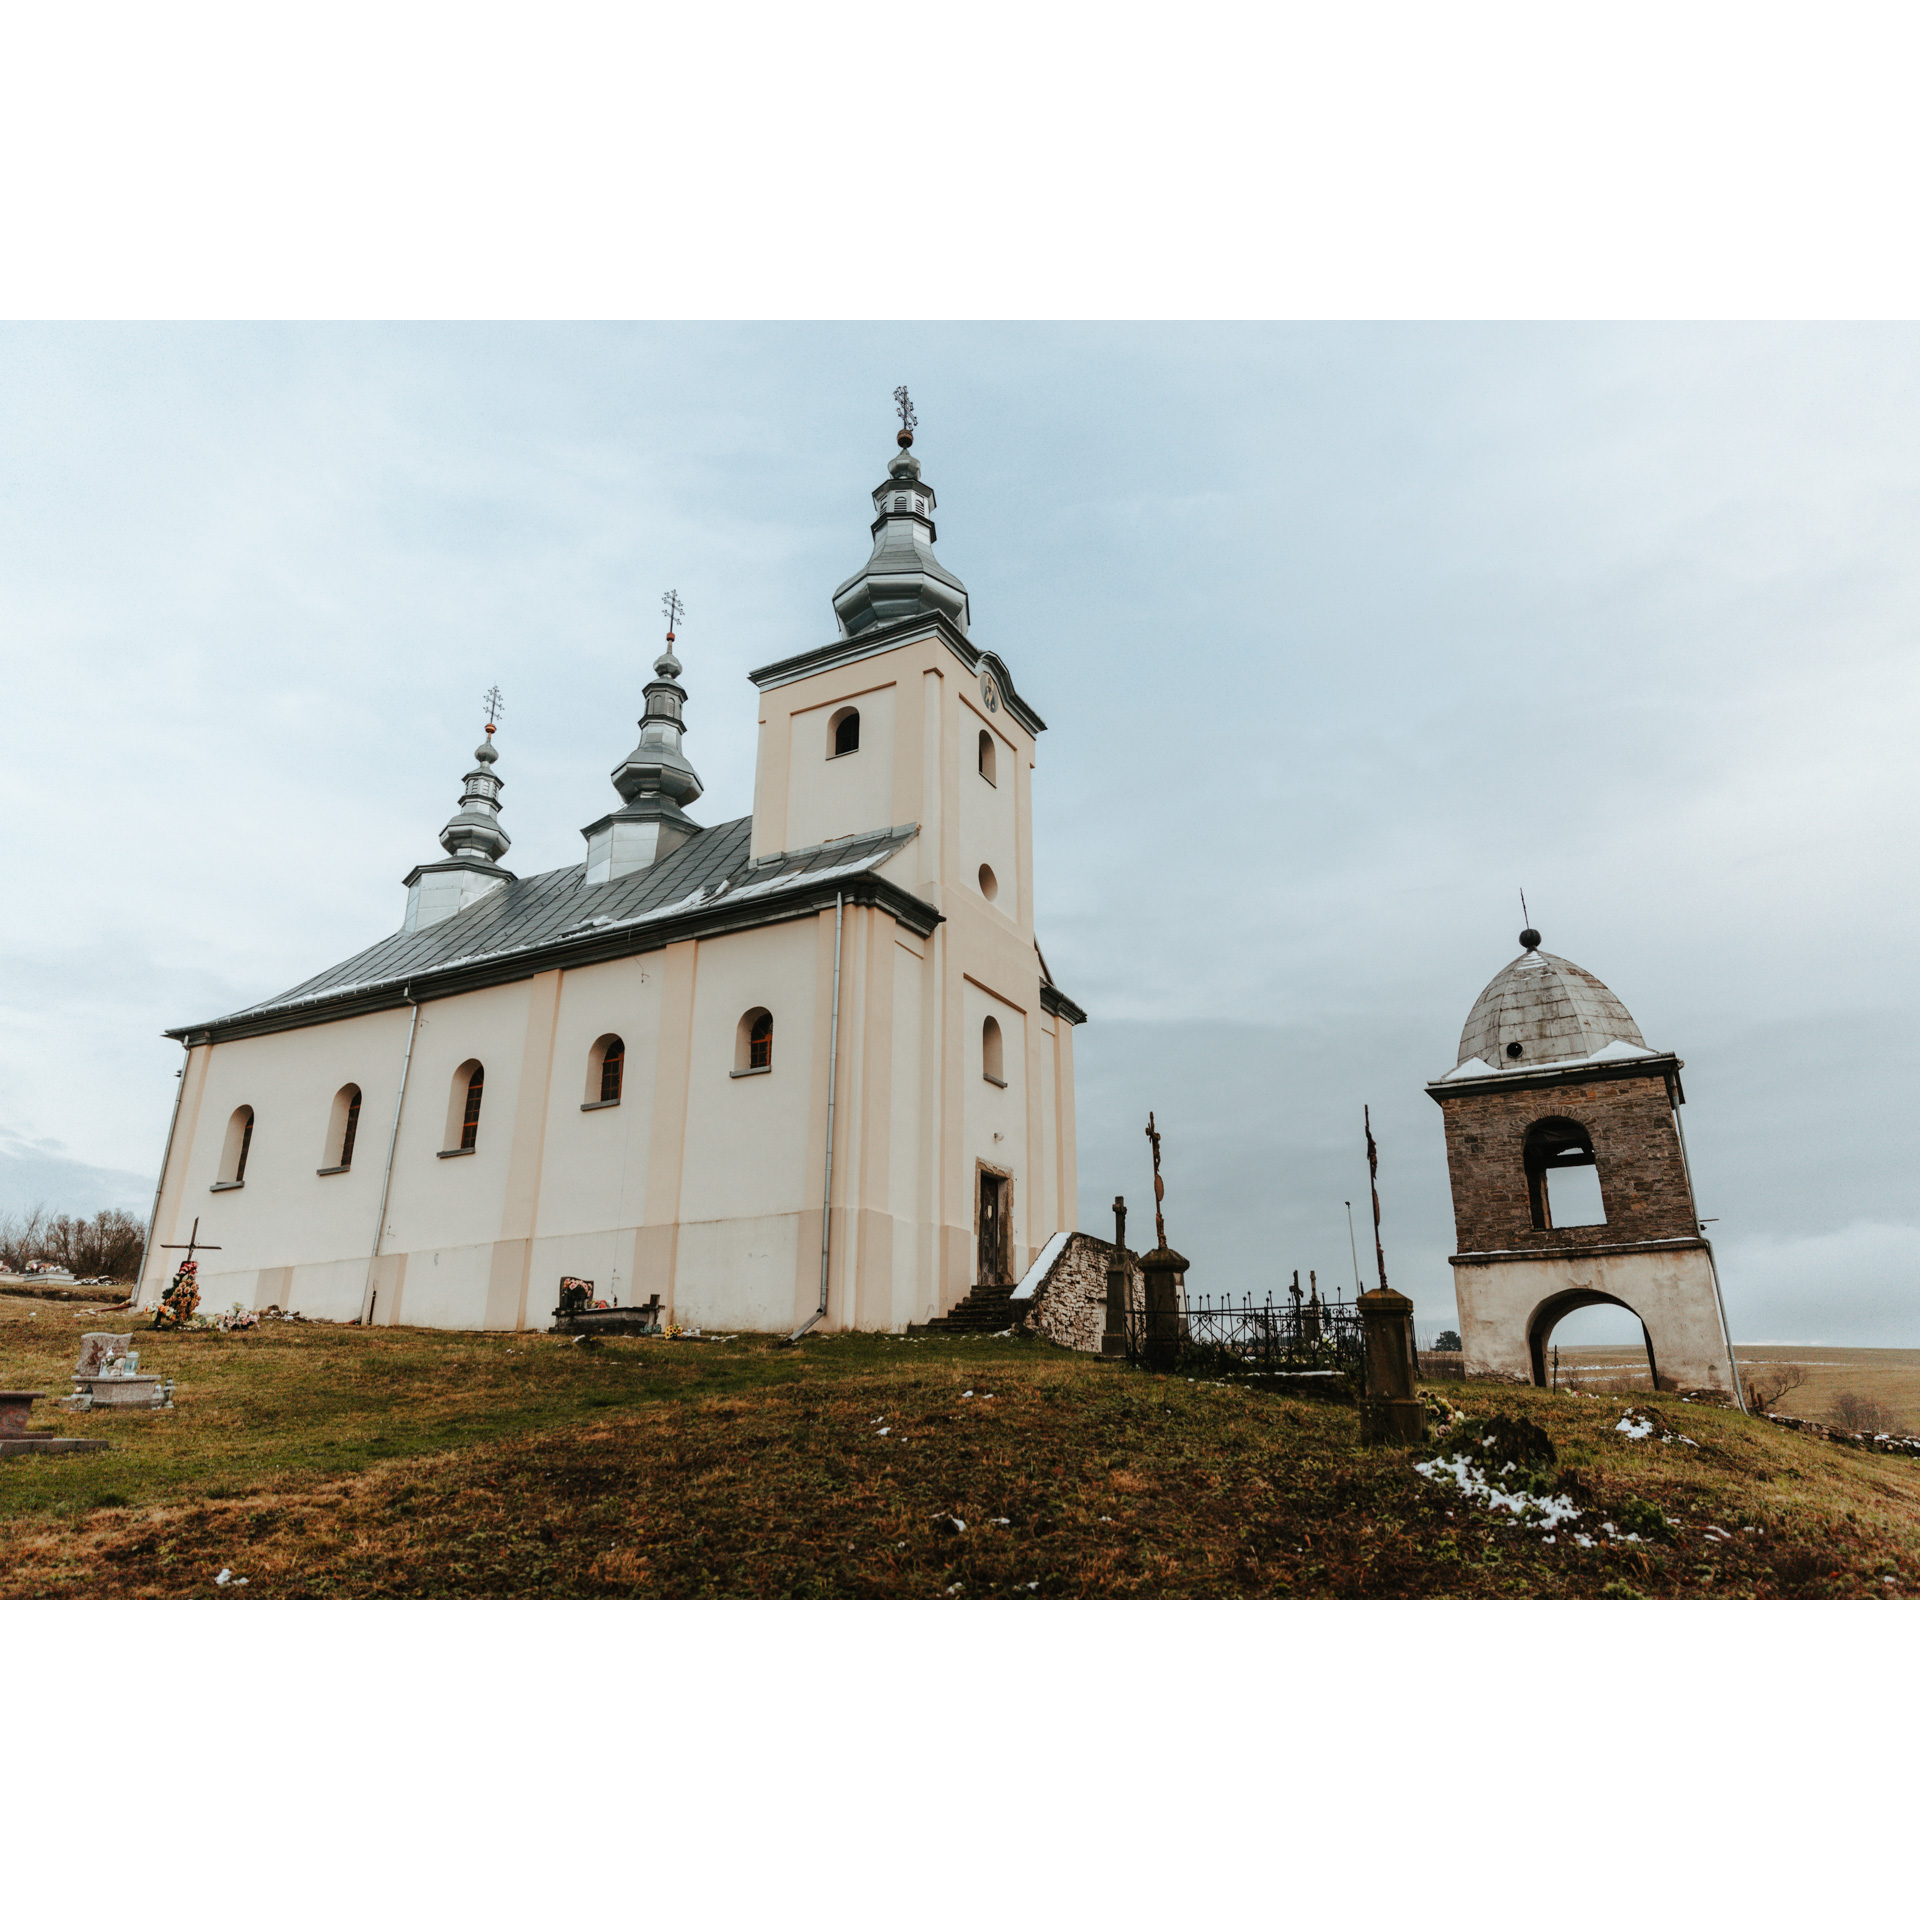 Biała, murowana cerkiew z szarym dachem zwieńczonym trzema kopułami i krzyżami, obok niska dzwonnica z kopulastym dachem i krzyżem